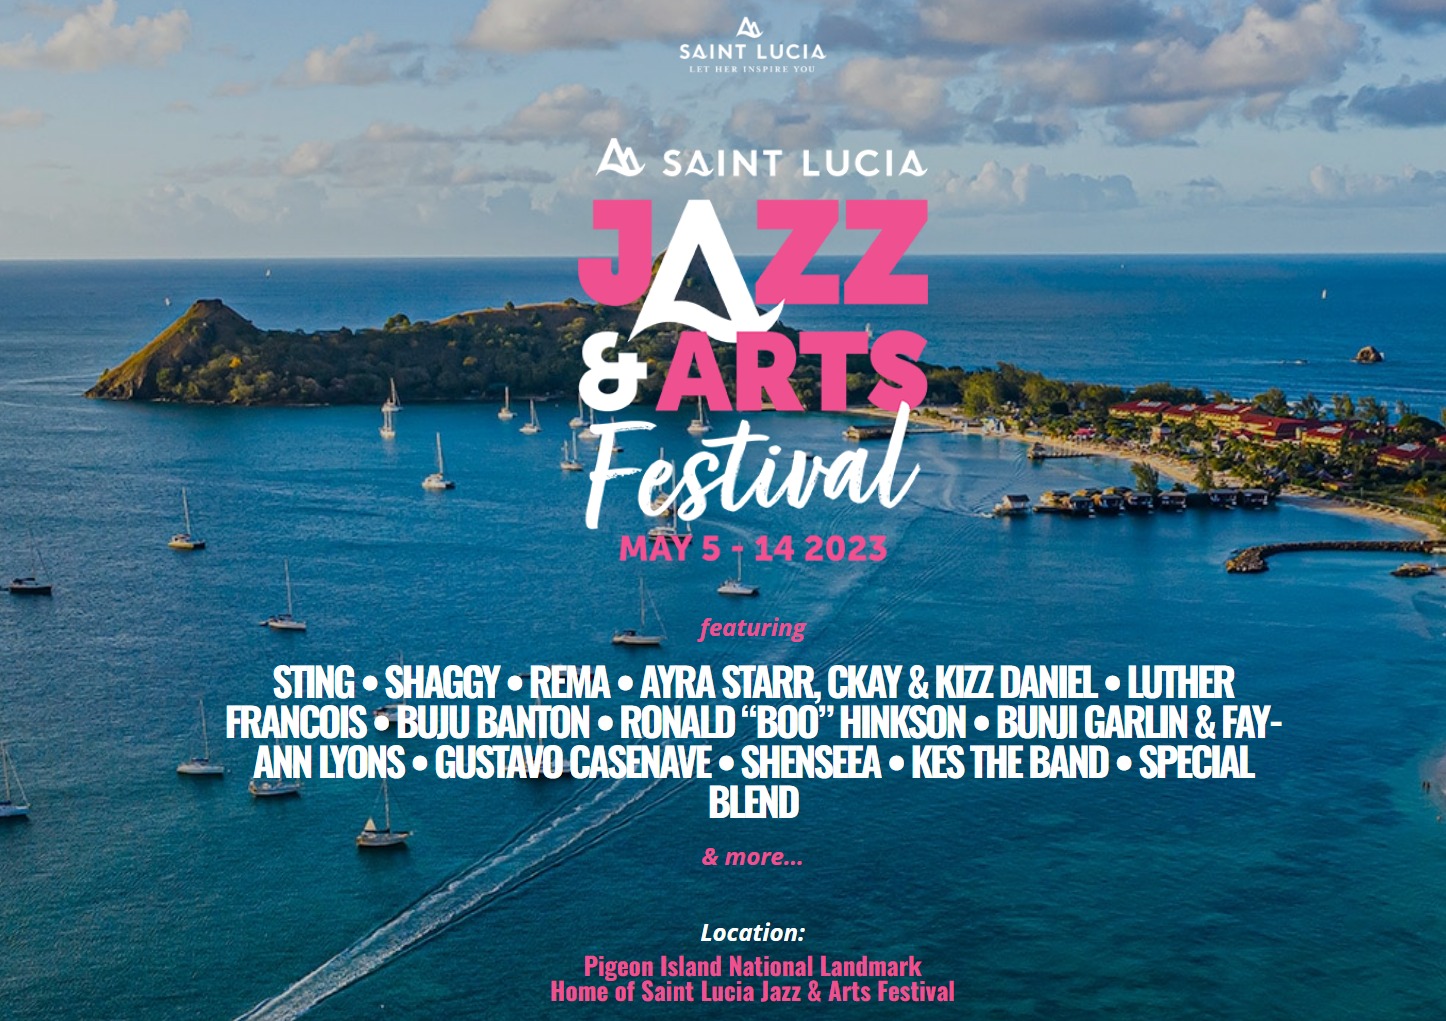     Le Saint Lucia Jazz & Arts Festival est de retour

